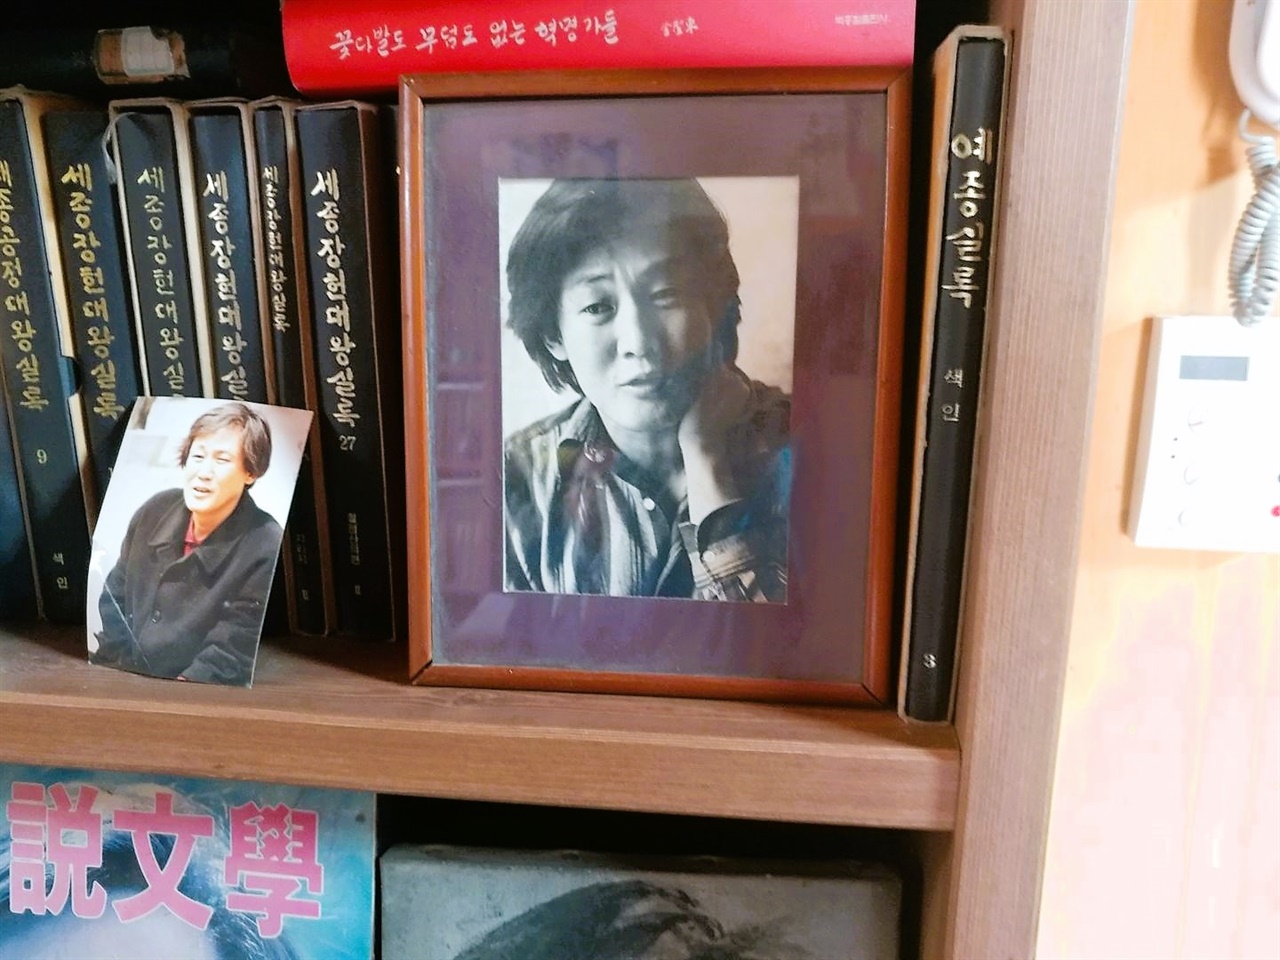 서재 책꼿이에서 발견한 김성동의 젊은 날 사진 